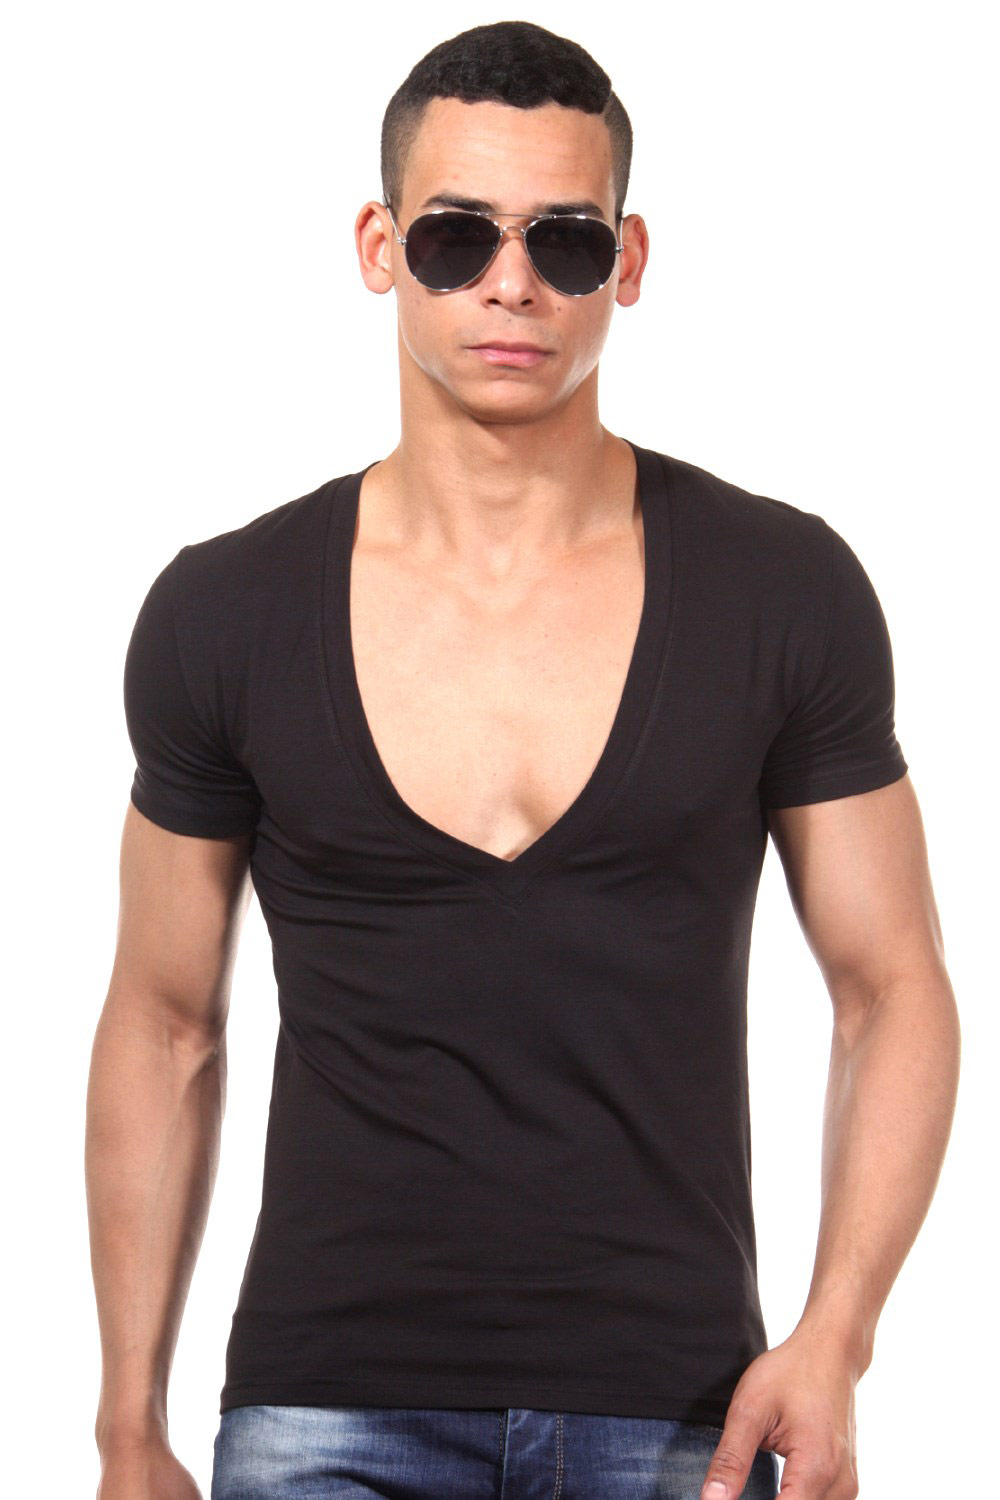 DOREANSE t-shirt v-neck slim fit at oboy.com